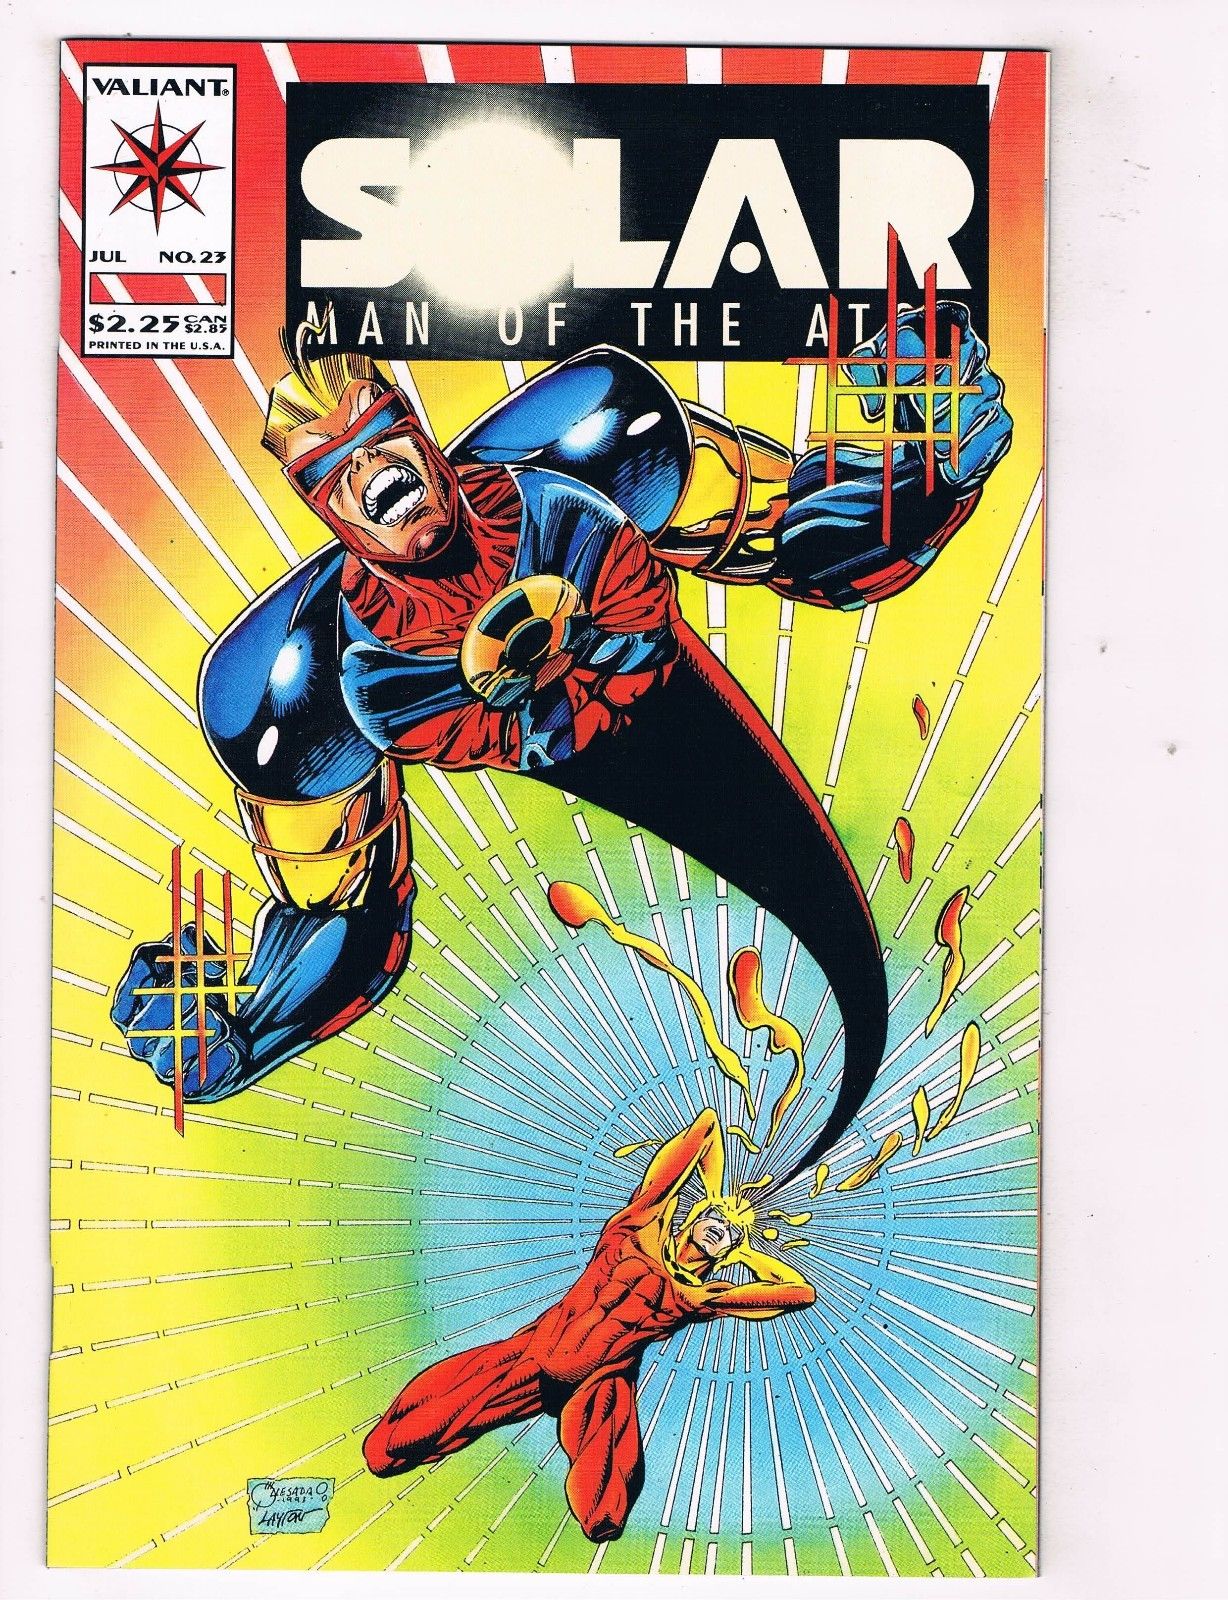 Solar Man of the Atom #27 November 1993 Valiant Comic Book VF/NM